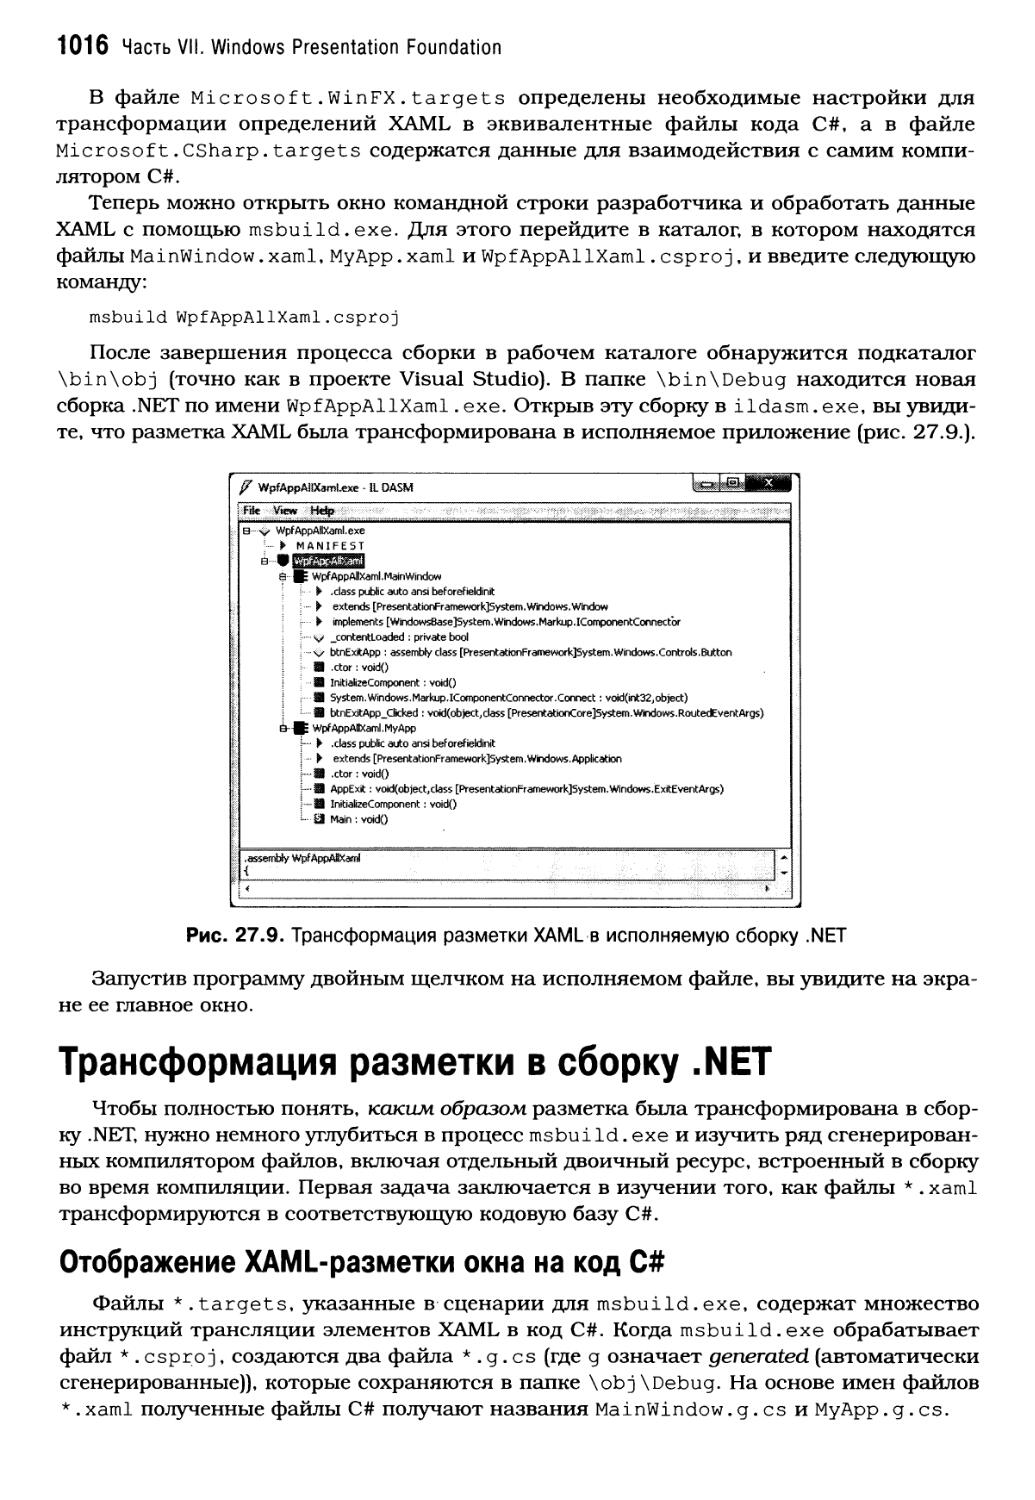 Трансформация разметки в сборку .NET